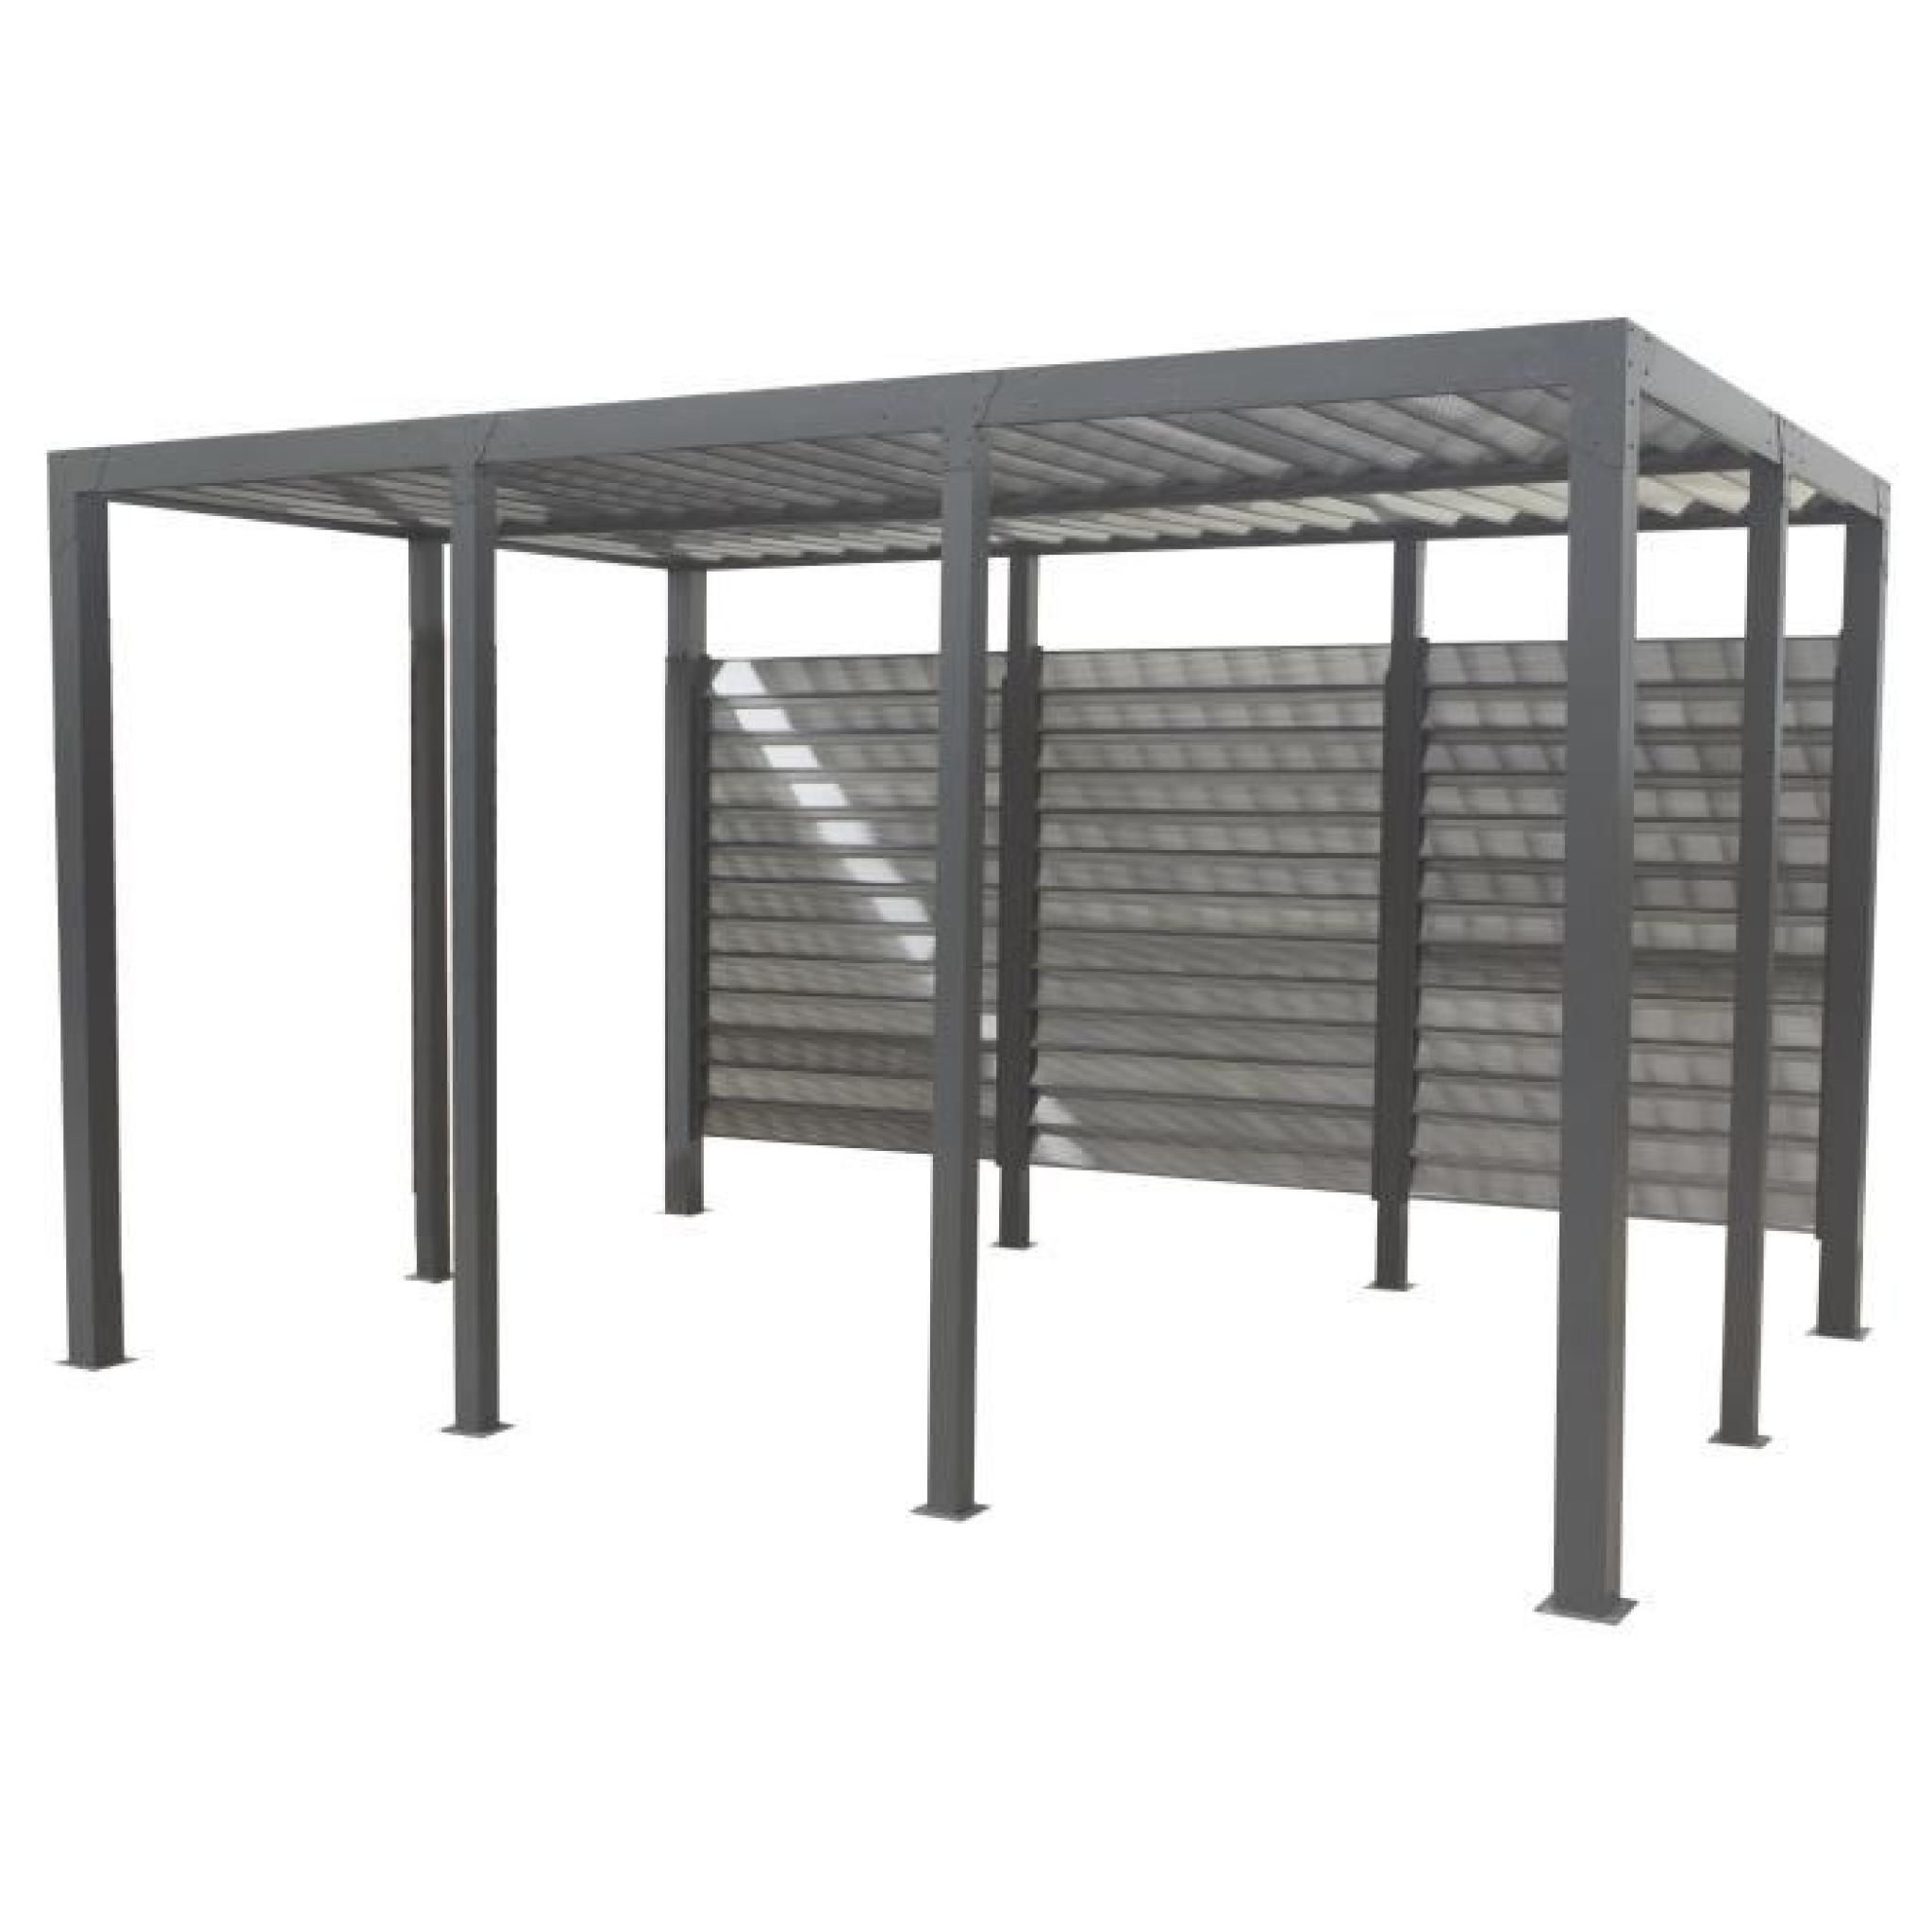 Carport aluminium 11,52 m² - 413 x 279 cm - Gris anthracite